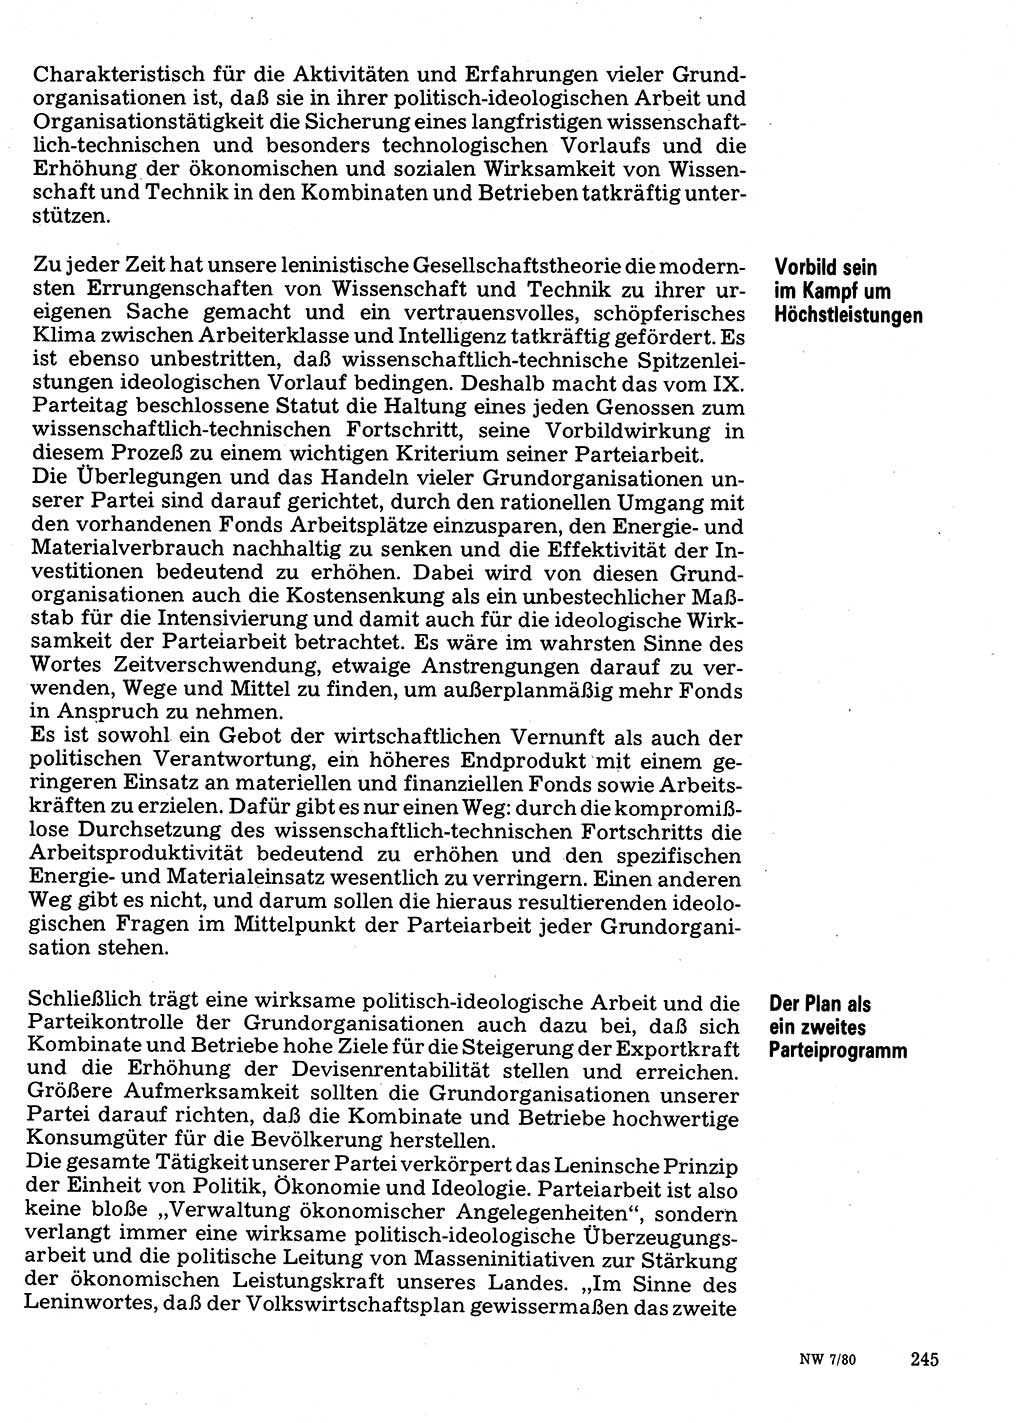 Neuer Weg (NW), Organ des Zentralkomitees (ZK) der SED (Sozialistische Einheitspartei Deutschlands) für Fragen des Parteilebens, 35. Jahrgang [Deutsche Demokratische Republik (DDR)] 1980, Seite 245 (NW ZK SED DDR 1980, S. 245)